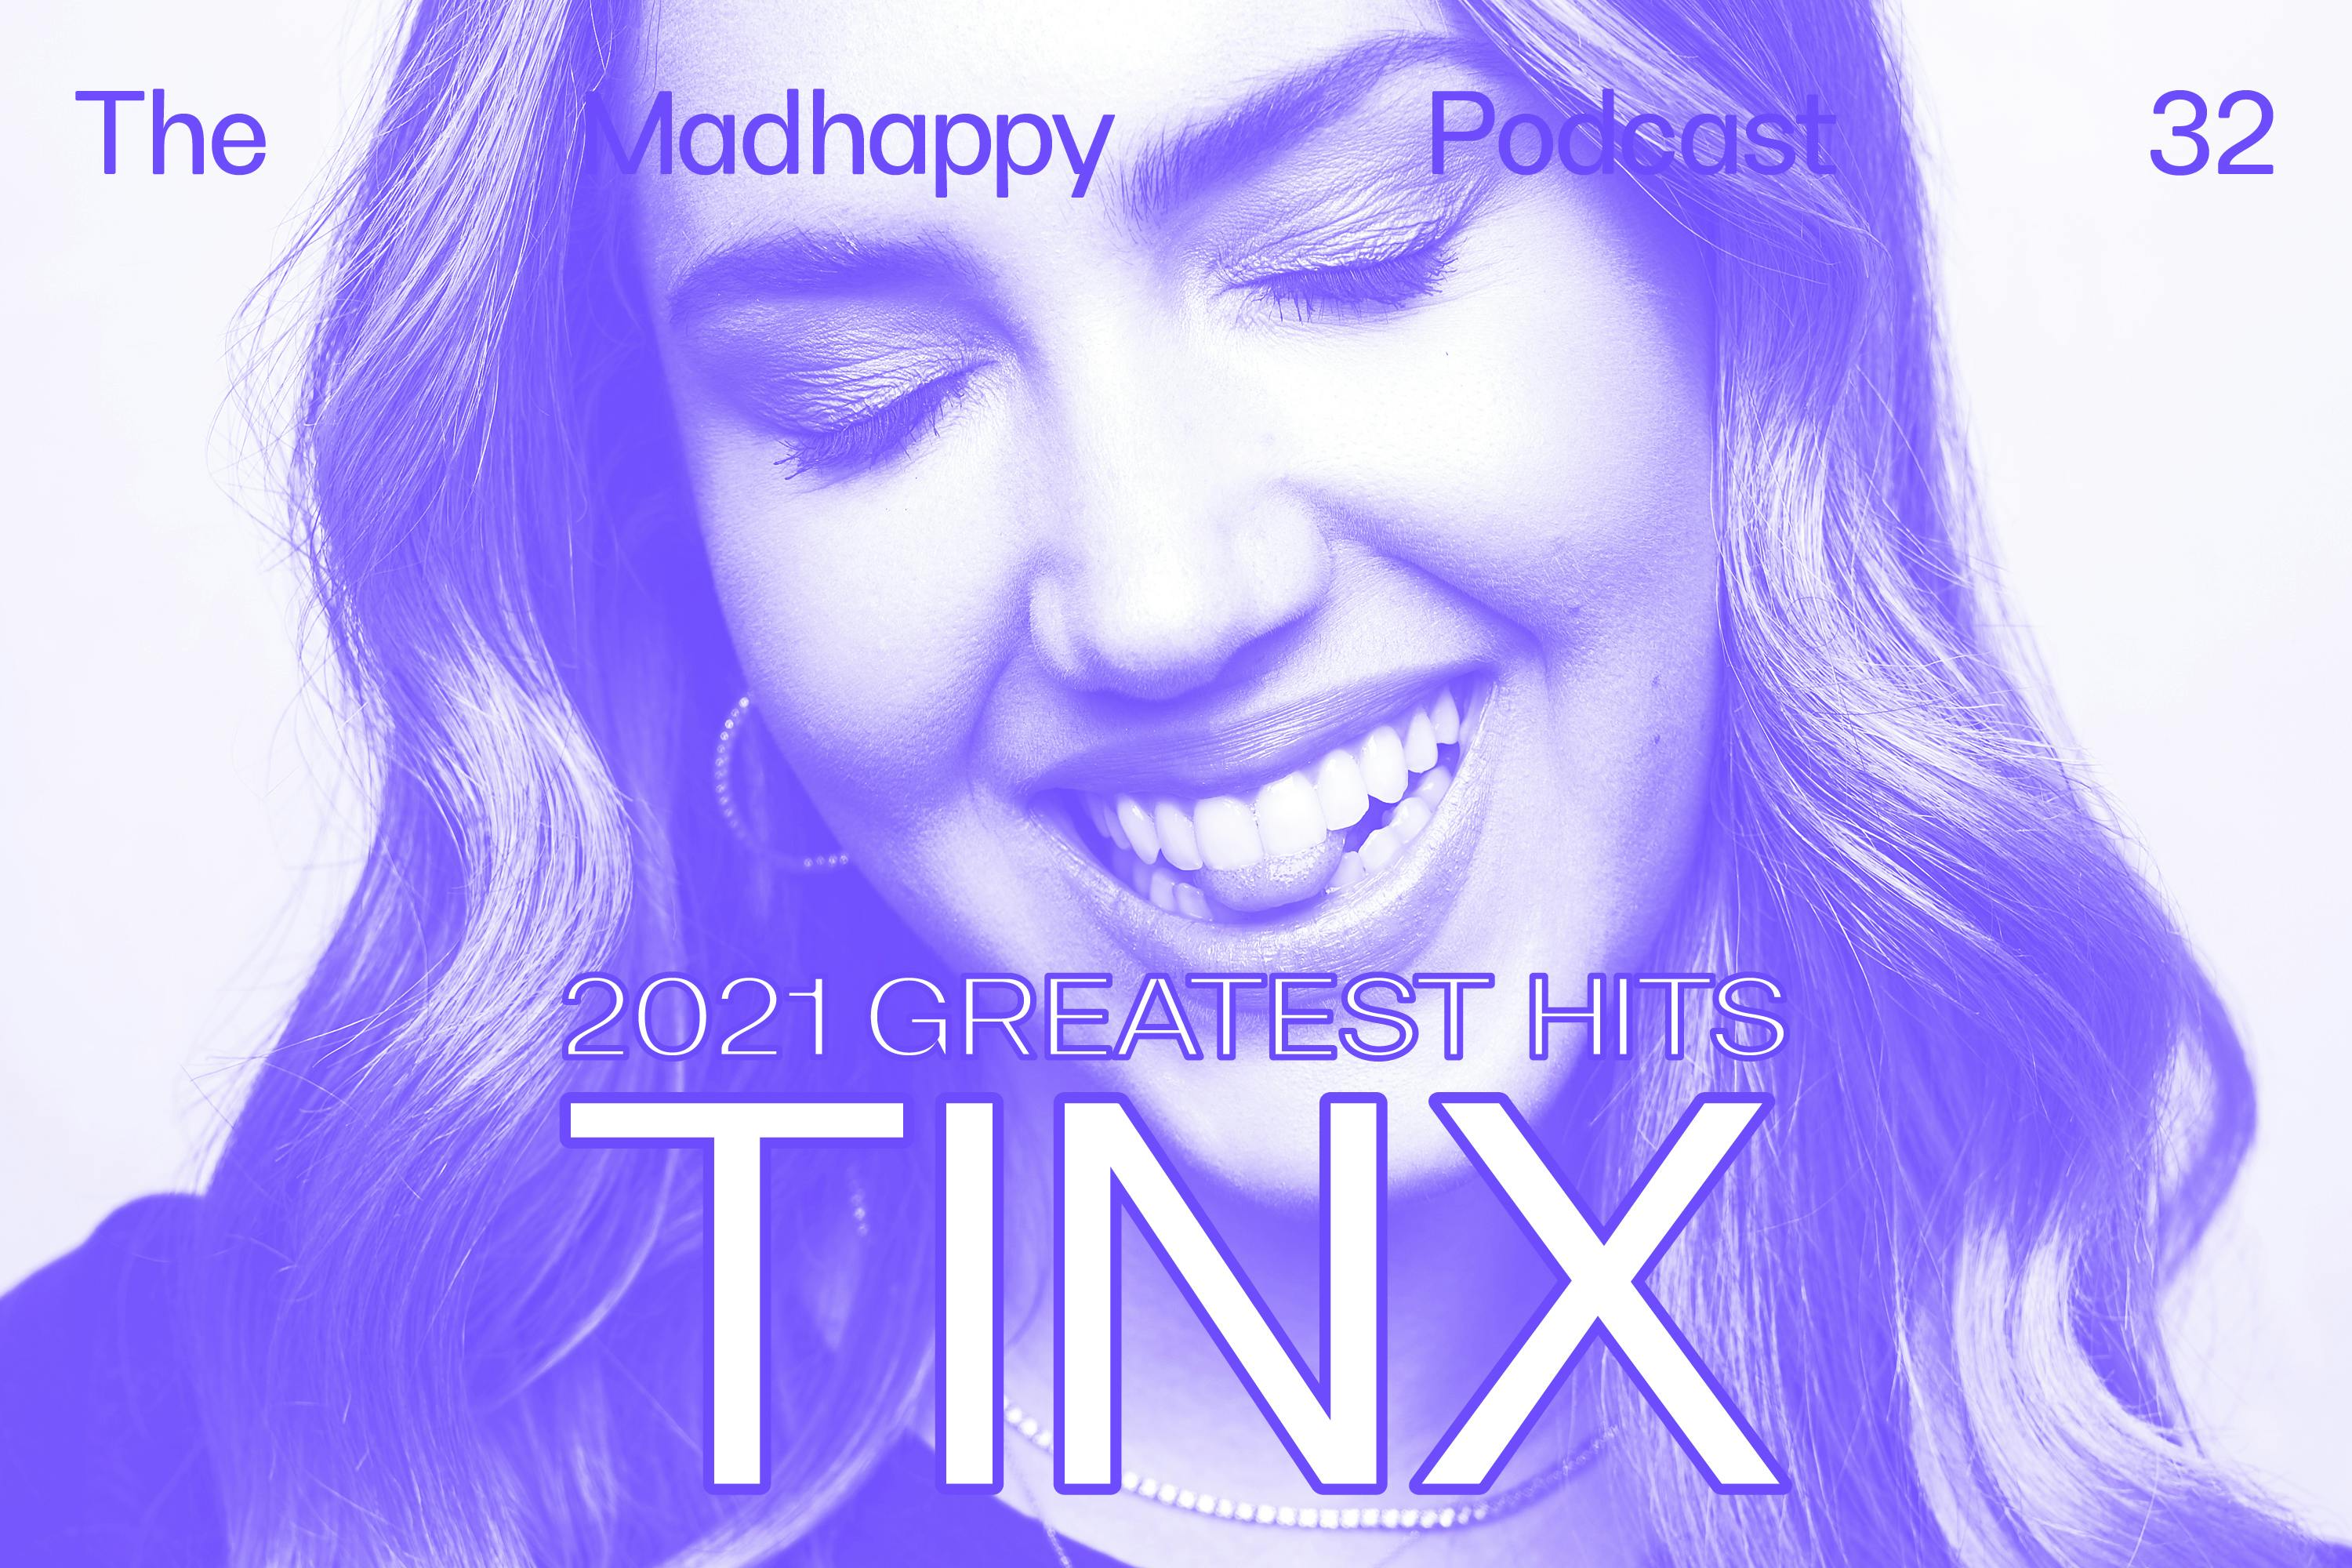 Episode 32: Tinx